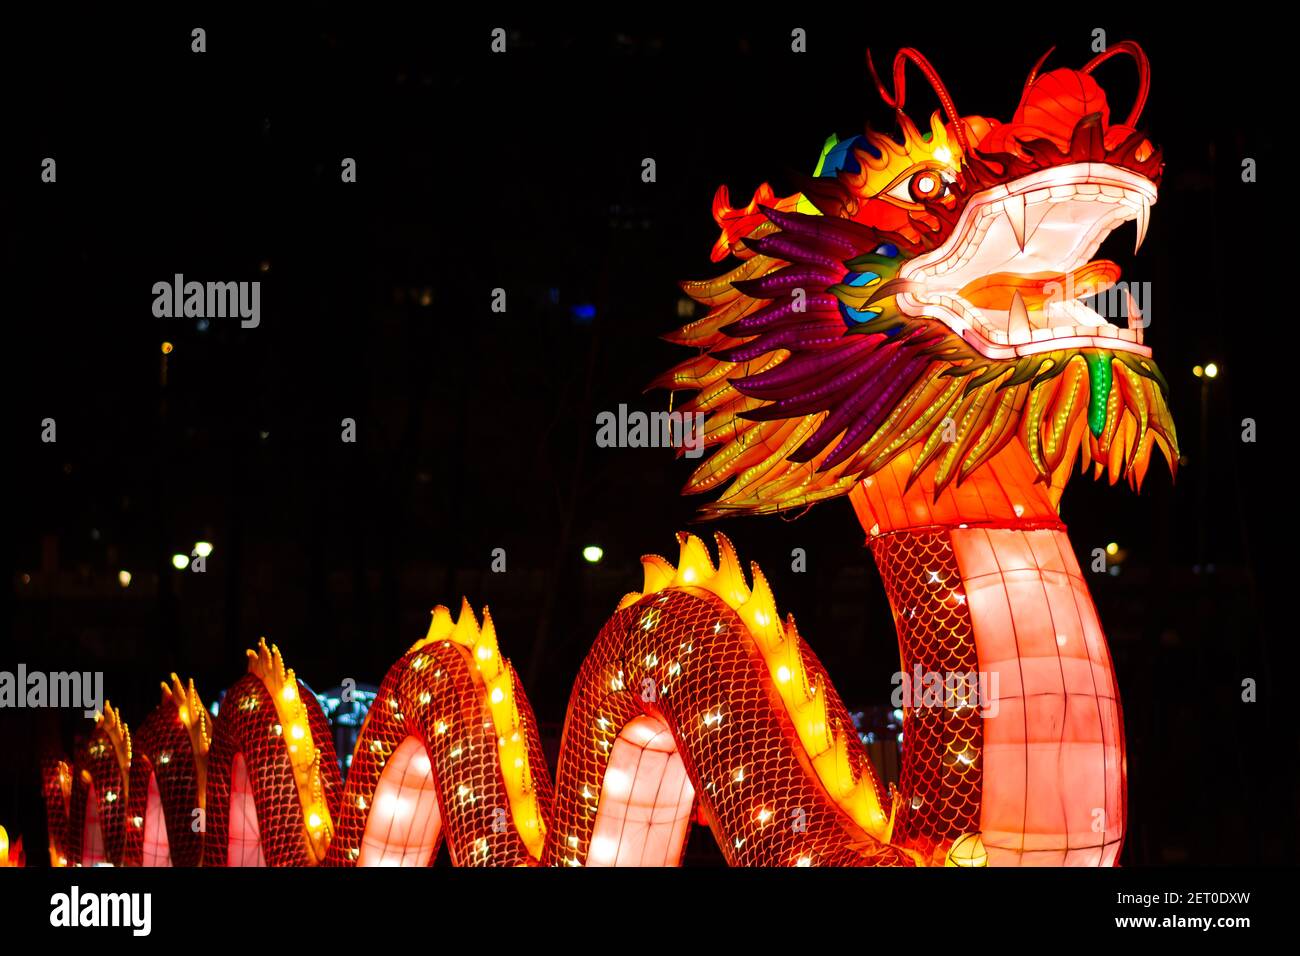 Le Festival des lanternes chinoises au parc de Limanski à Novi Sad. Le dragon chinois avec un corps semblable à un serpent, également connu sous le nom de Loong, long, Lung. Banque D'Images